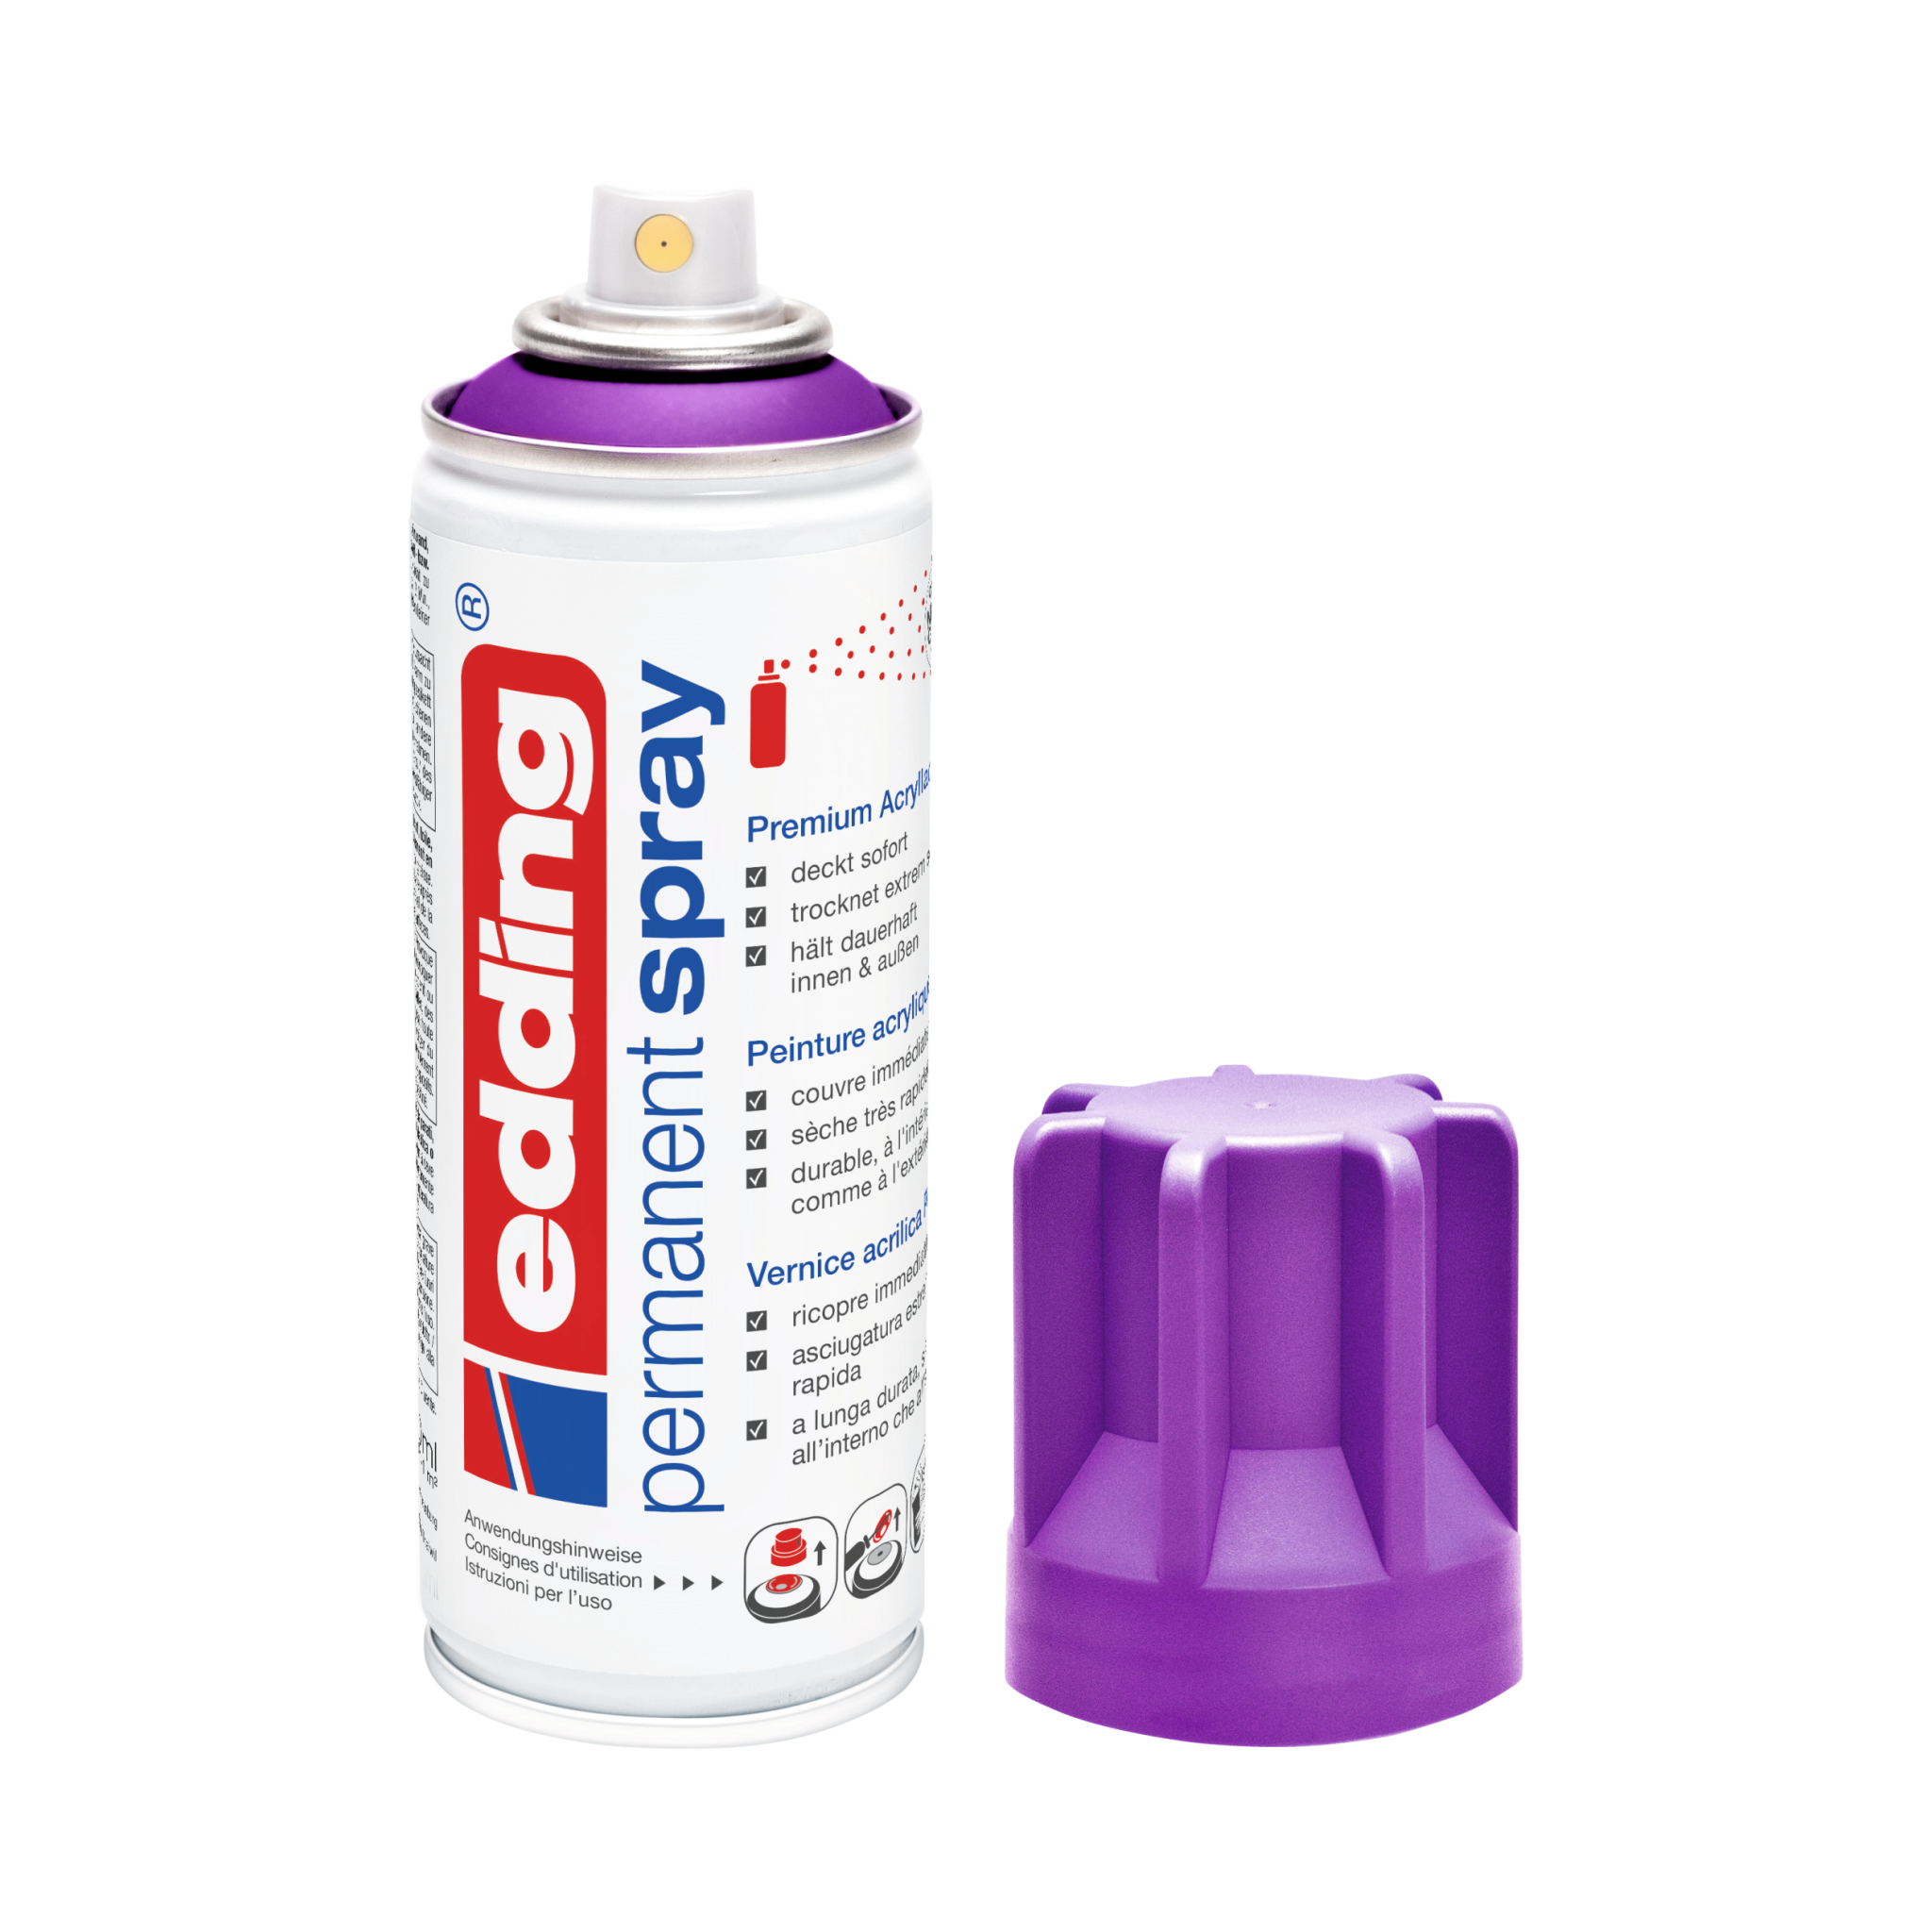 Eine Dose Permanentfarbe der Marke Edding 5200 Permanentspray Acryllack Neon & Kräftig Farben ohne Deckel auf weißem Untergrund.